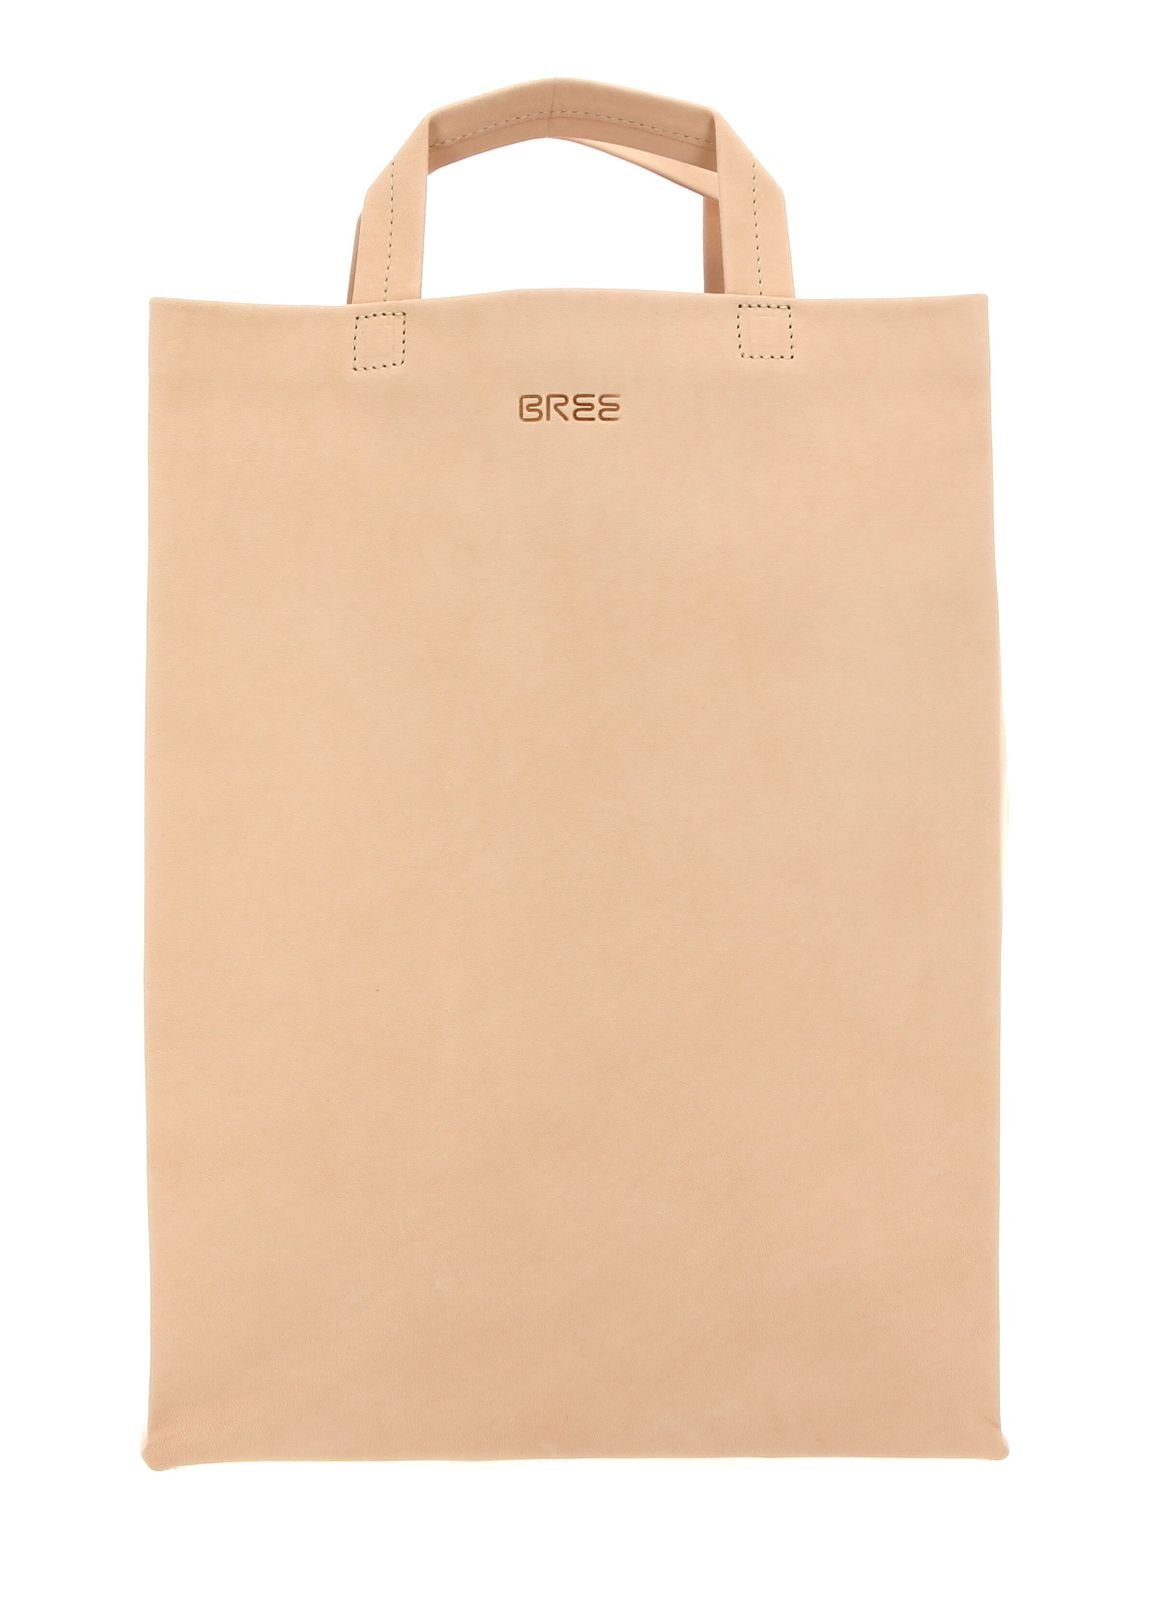 BREE Handtasche »Simply 1« online kaufen | OTTO